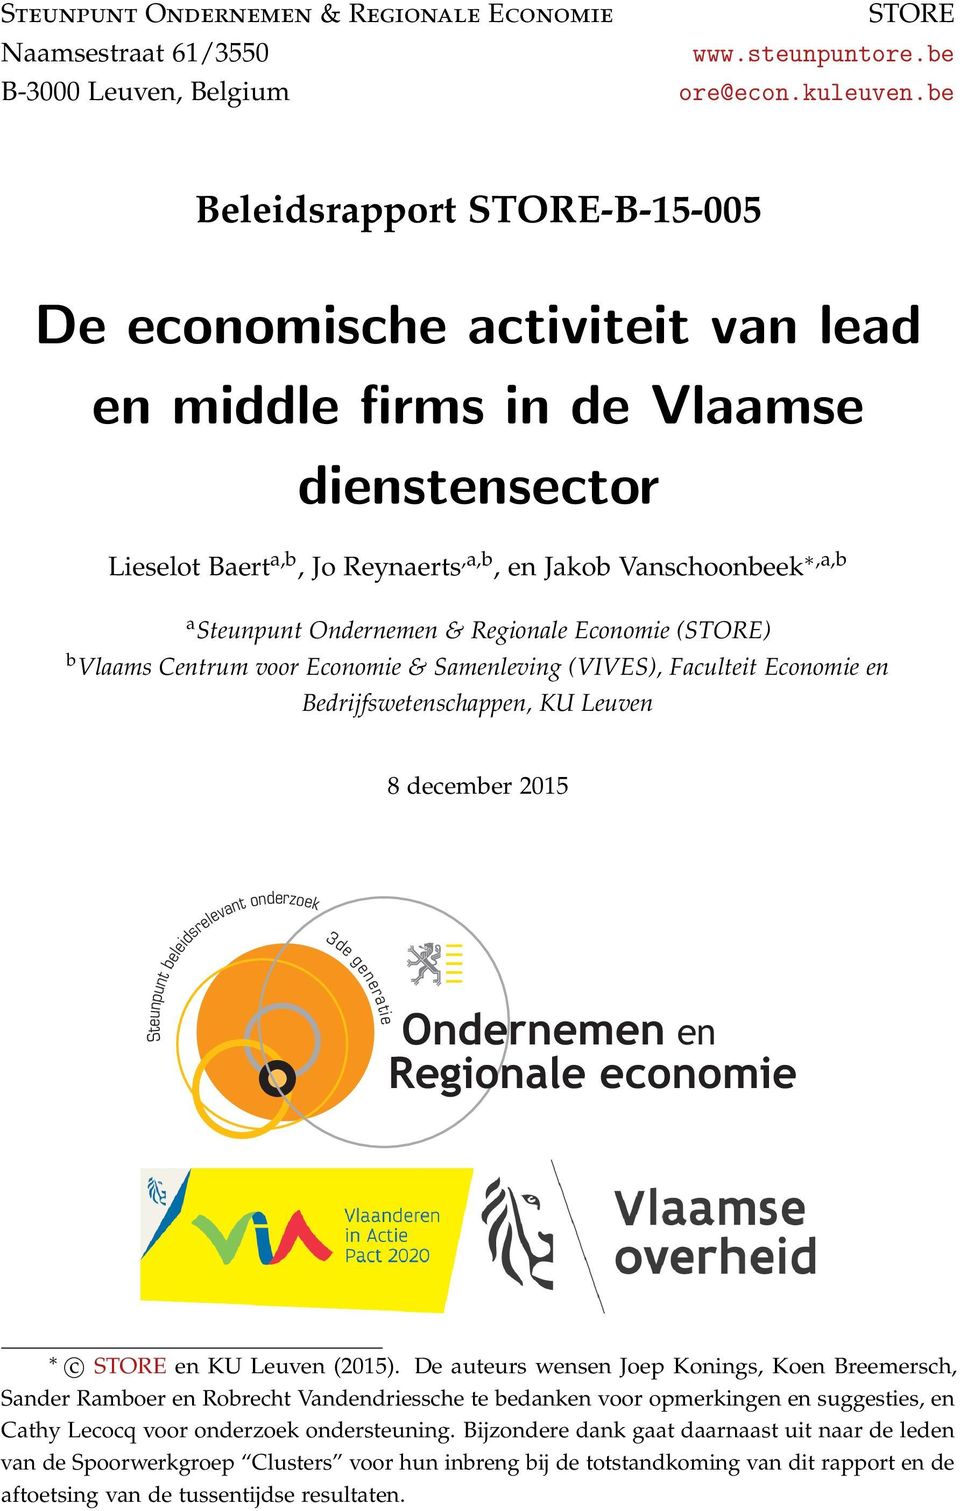 Ondernemen & Regionale Economie (STORE) b Vlaams Centrum voor Economie & Samenleving (VIVES), Faculteit Economie en Bedrijfswetenschappen, KU Leuven 8 december 2015 Steunpunt beleidsrelevant